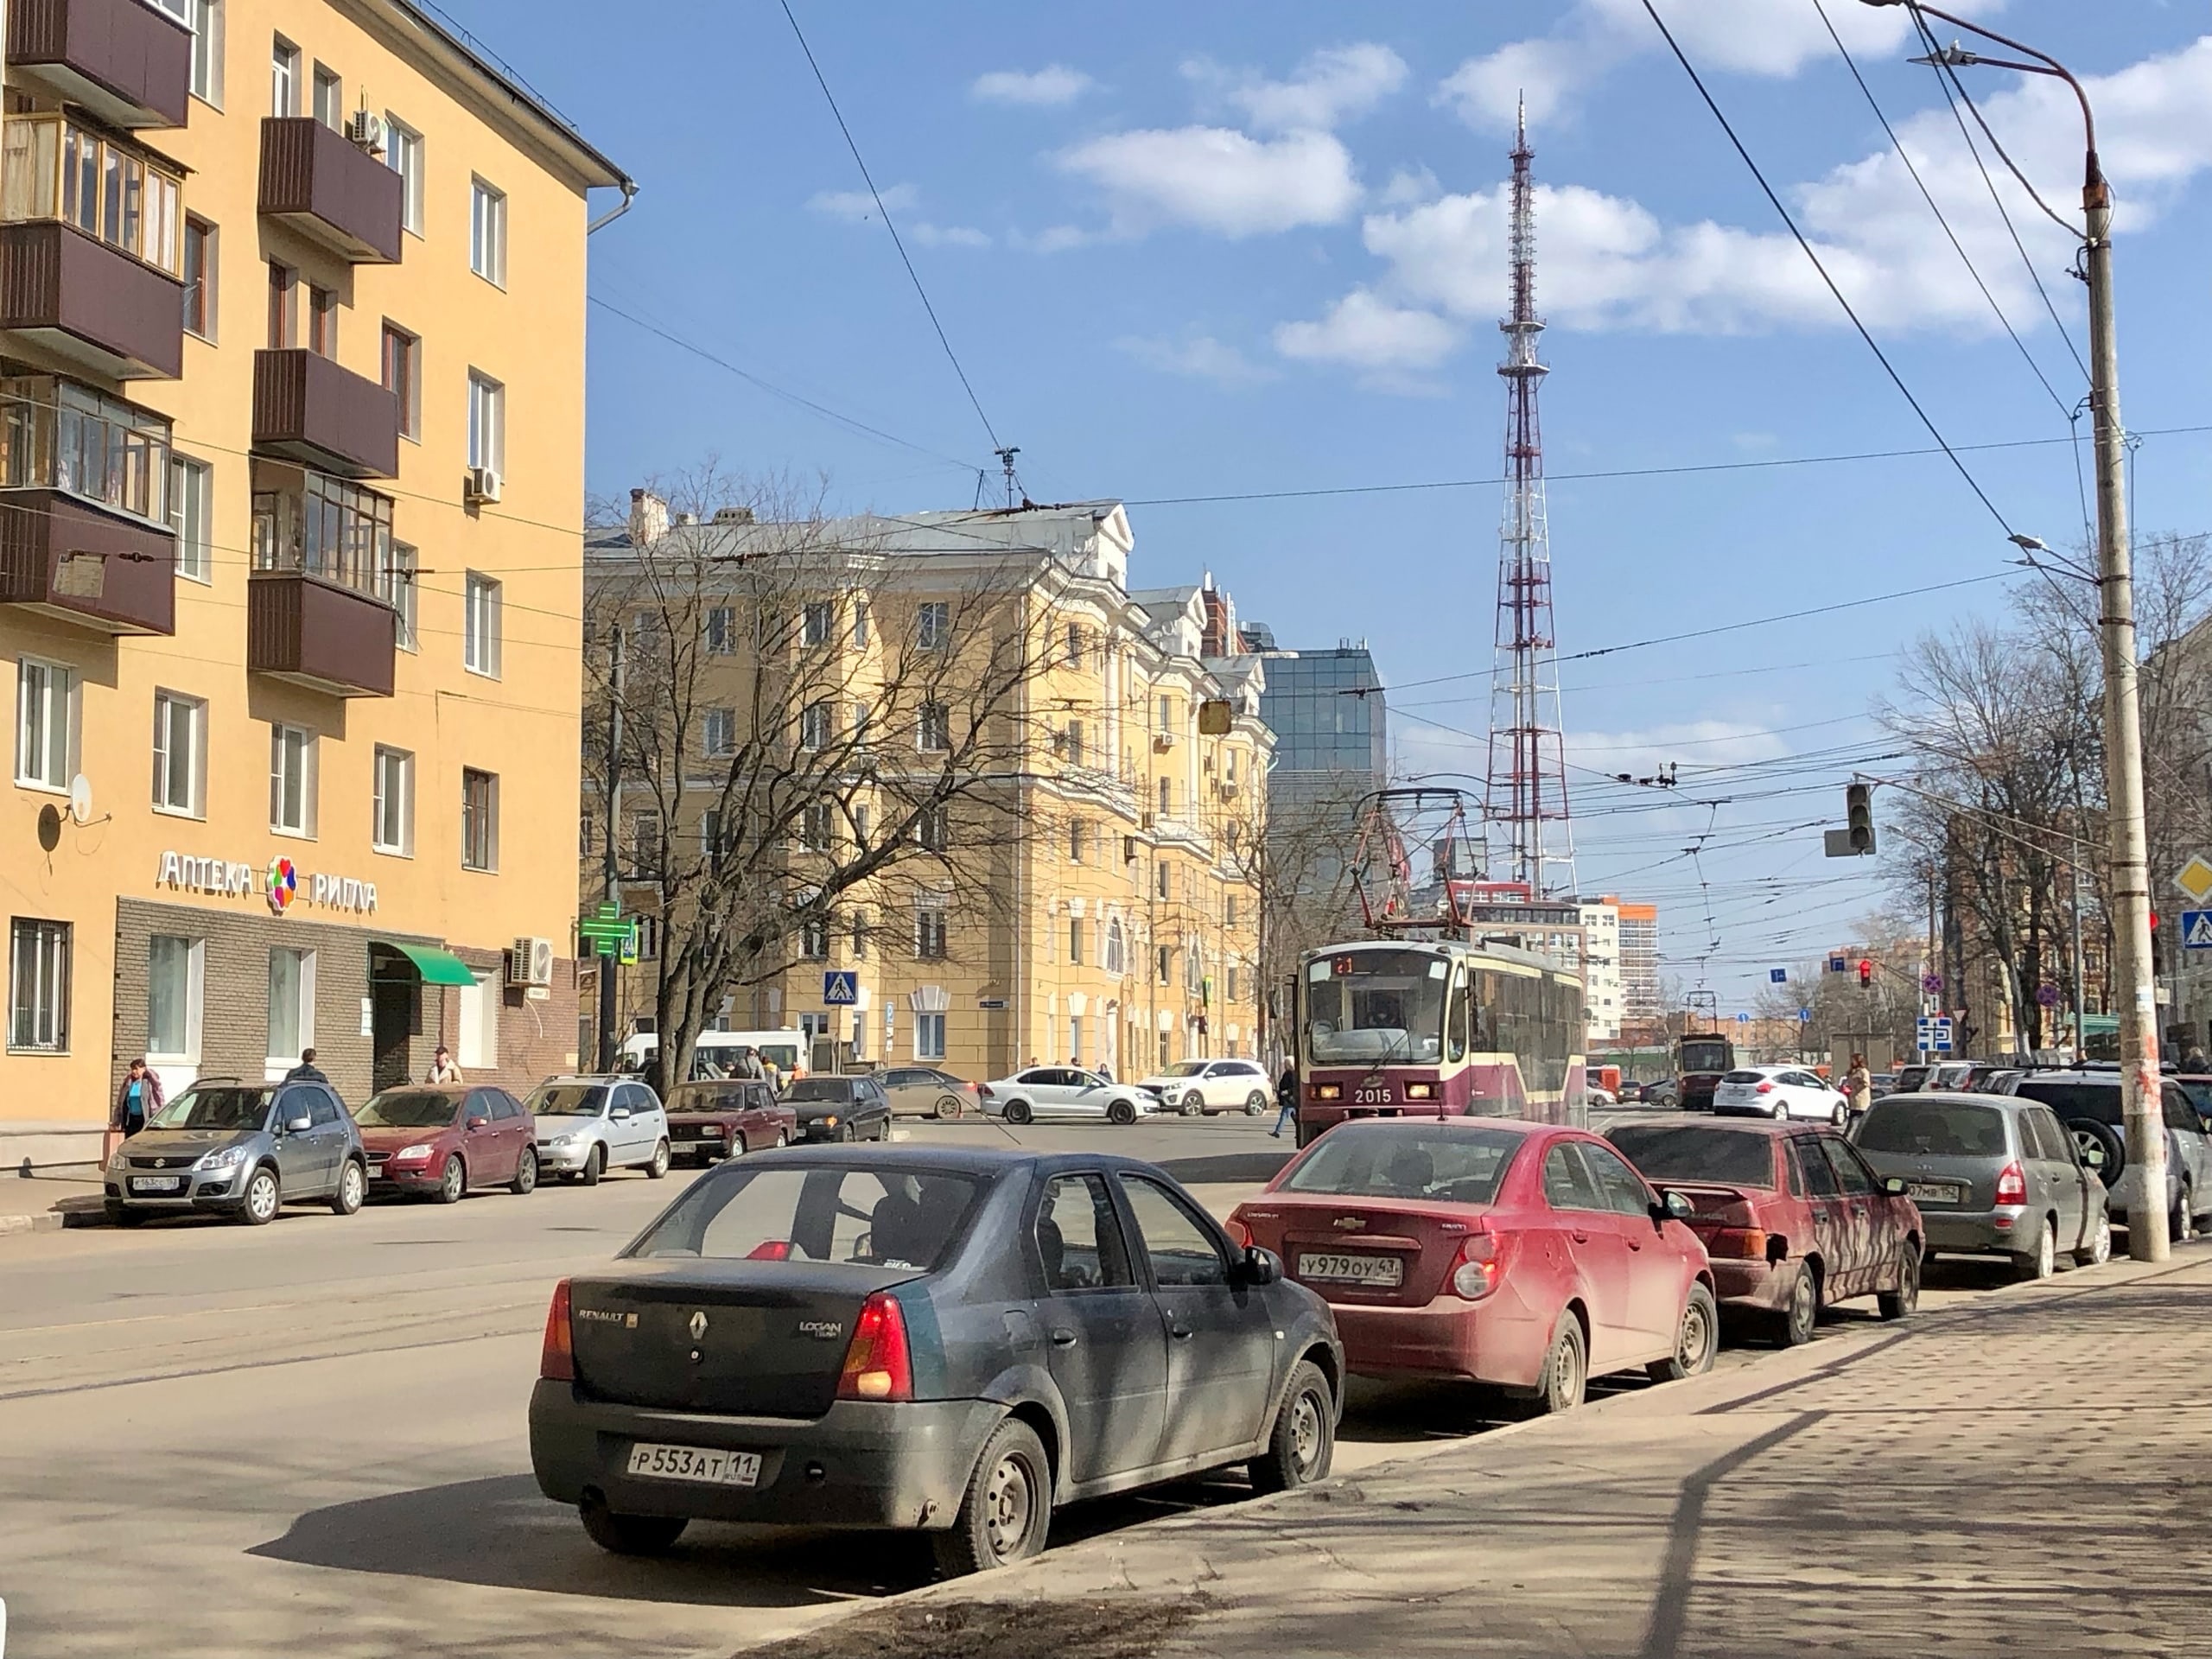 Два трамвая будут ходить другим маршрутом в Нижнем Новгороде